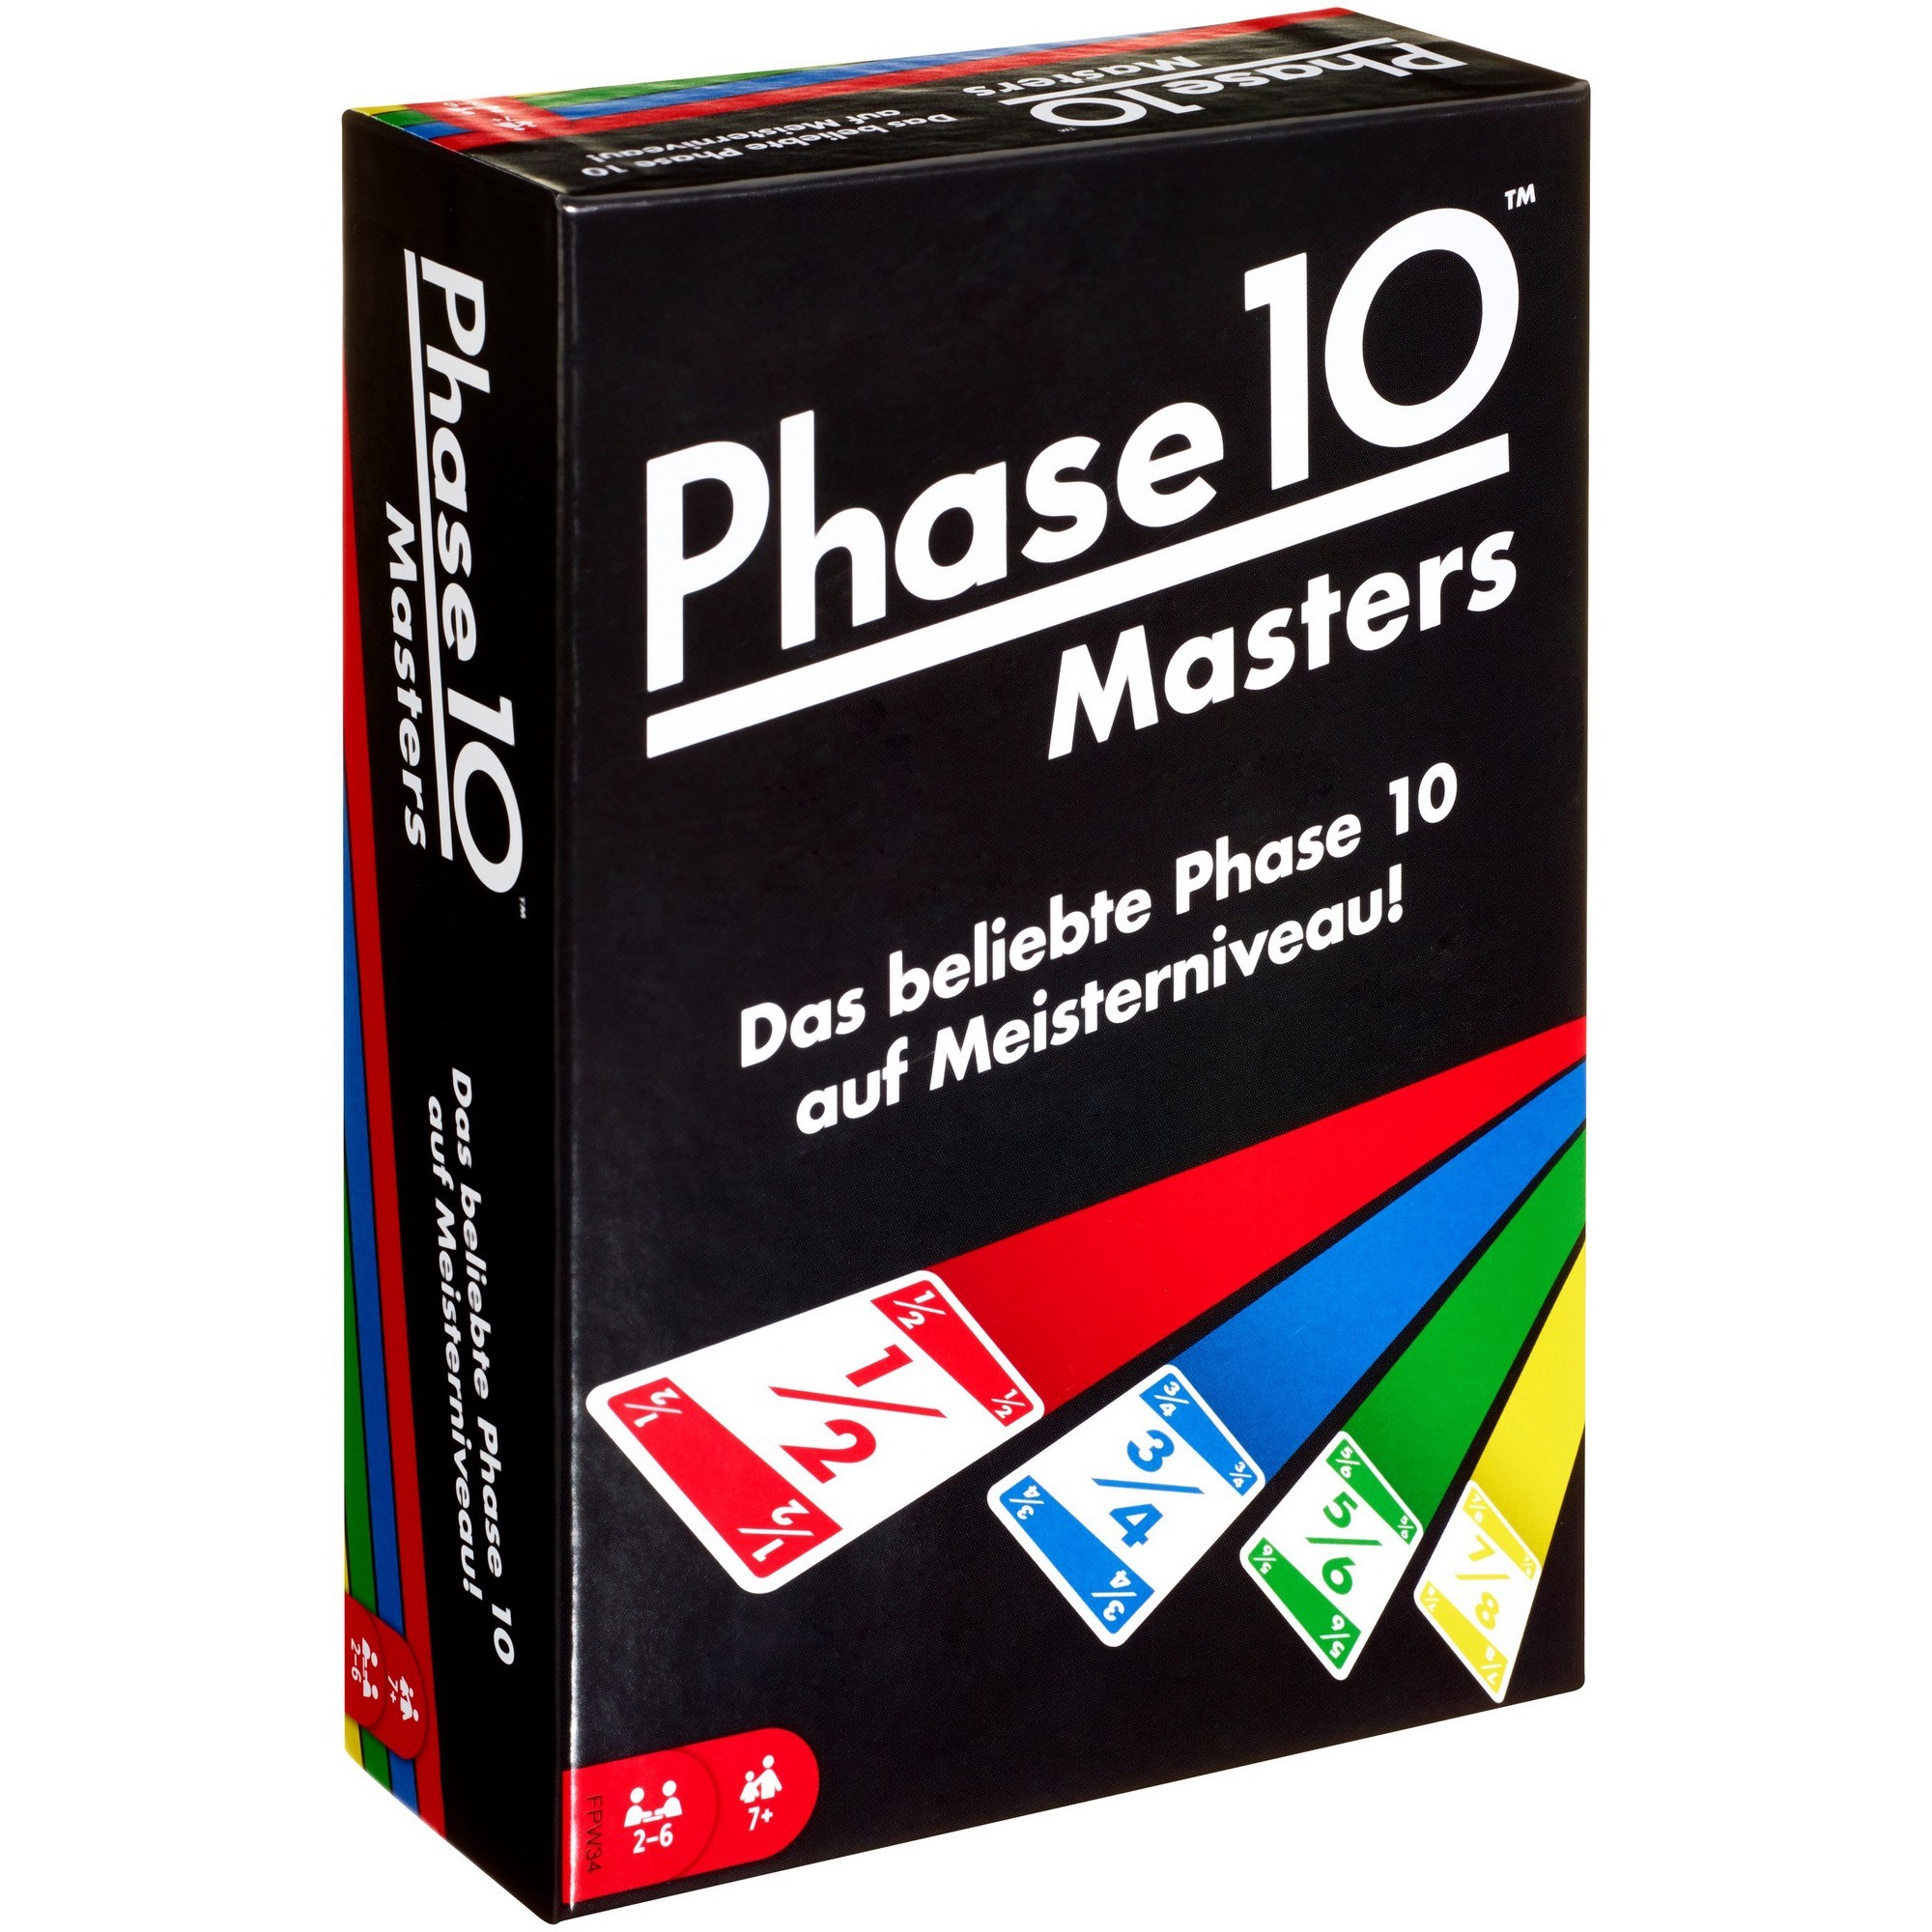 Image of Alternate - Phase 10 Masters Kartenspiel online einkaufen bei Alternate